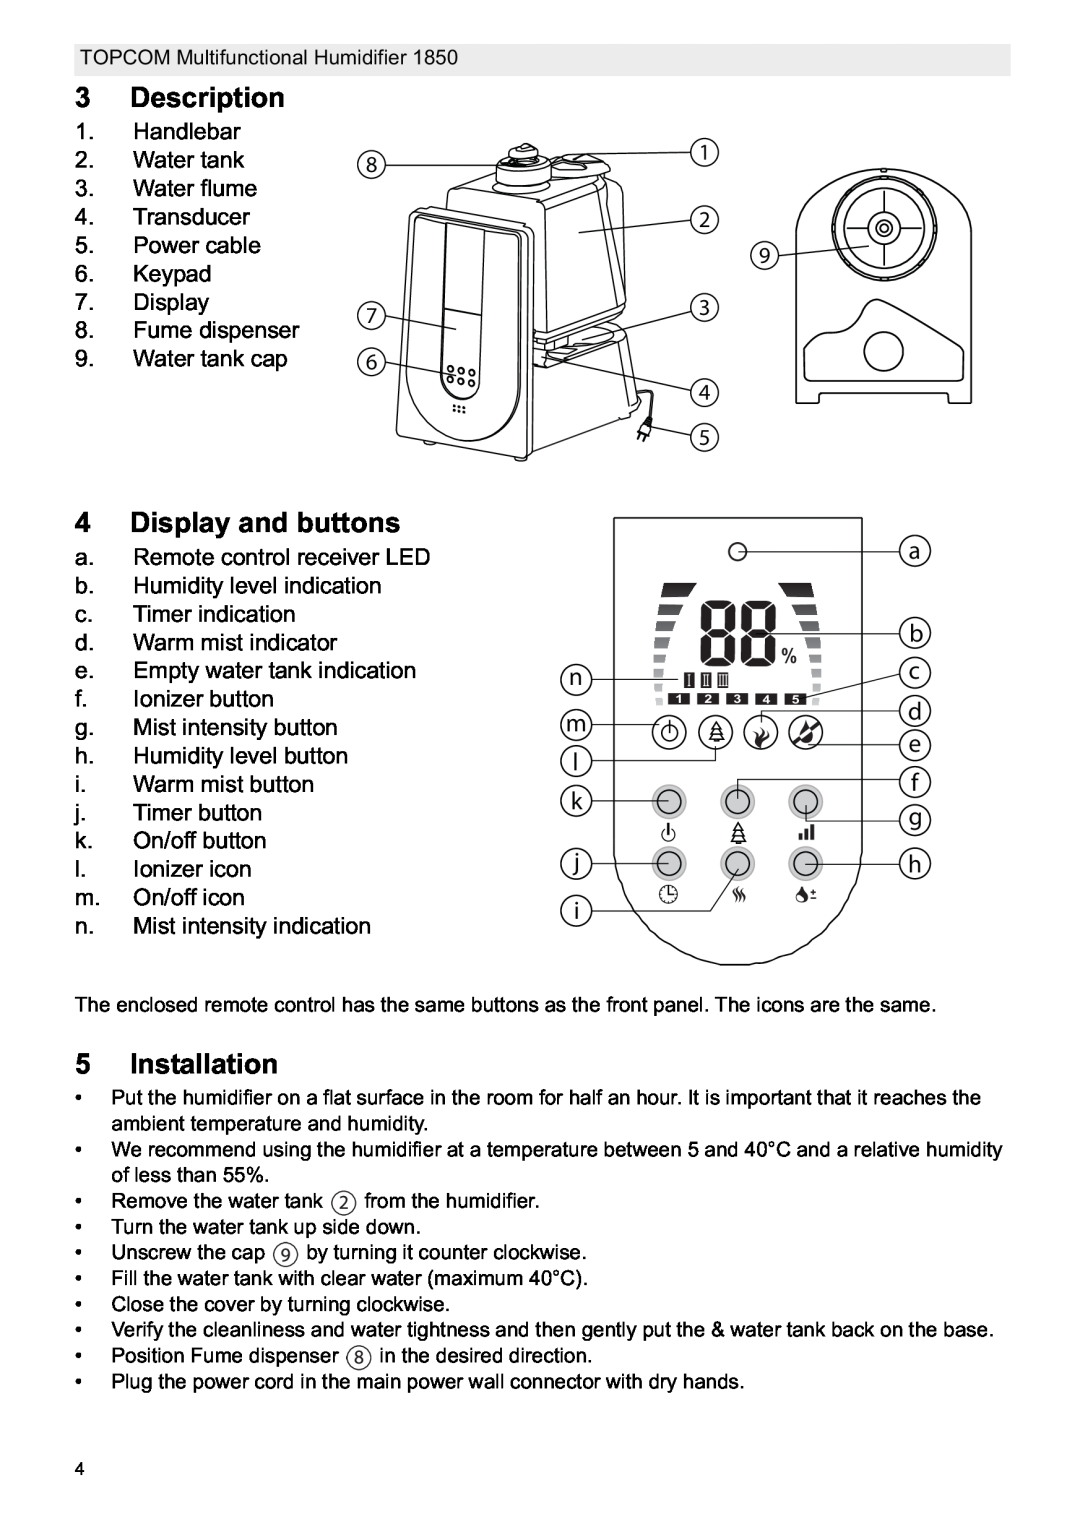 Topcom 1850 manual do utilizador Description, Display and buttons, Installation 